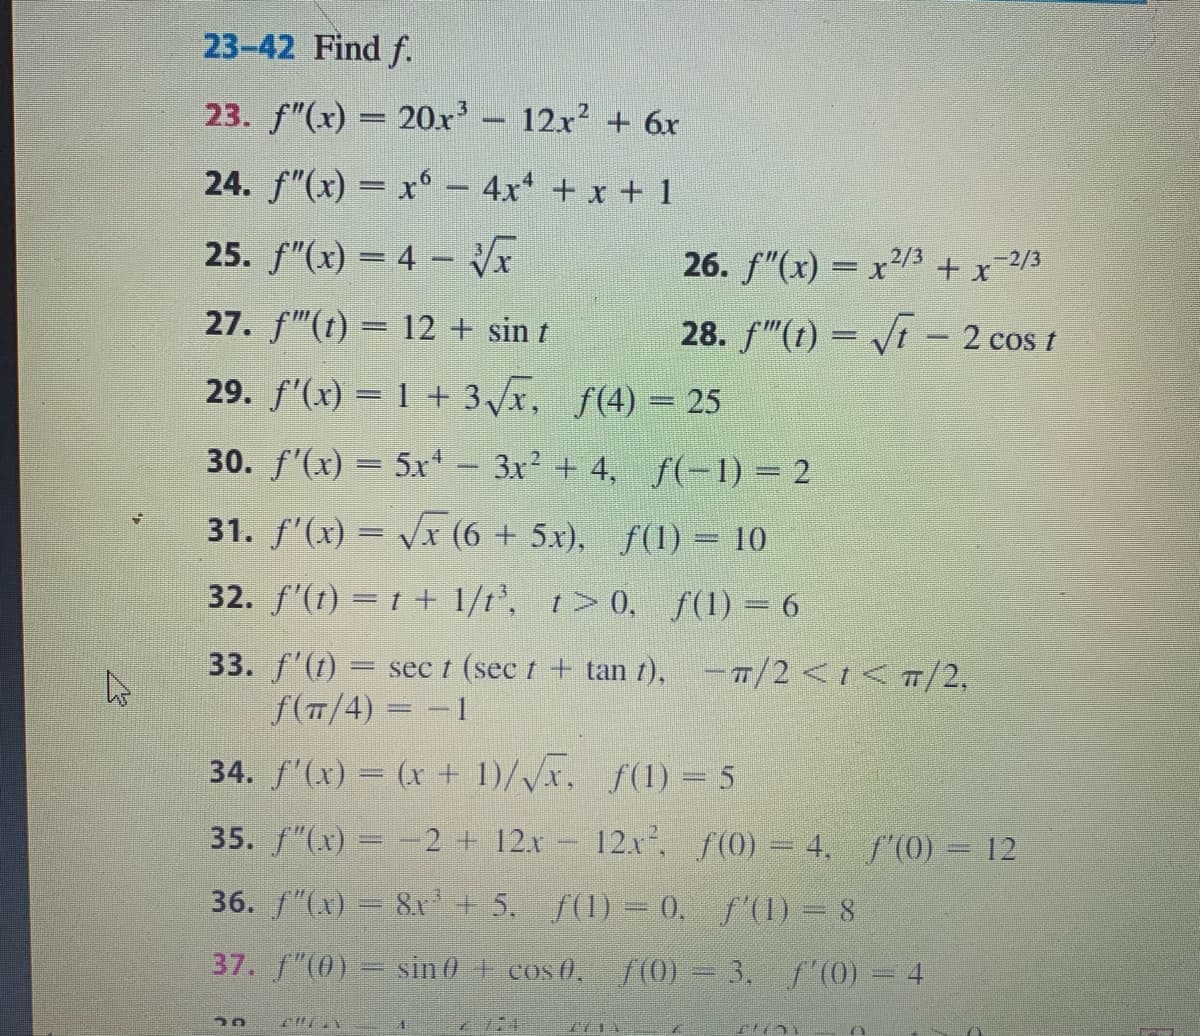 23-42 Find f.
23. f"(x) = 20x'- 12x2 + 6x
24. f"(x) = x° - 4x + x + 1
25. f"(x) = 4 –
26. f"(x) = x/3 + x-2/3
27. f"(t) = 12 + sin t
28. f"(t) = /t - 2 cos t
29. f'(x) = 1 + 3/x, f(4) = 25
30. f'(x) = 5x- 3x2 + 4, f(-1) = 2
31. f'(x) = Vx (6 + 5x), f(1) = 10
32. f'(t) = t + 1/t', t> 0, f(1) = 6
33. f'(1) = sec t (sec t + tan t), -T/2<t<T/2,
f(T/4) = -1
34. f'(x) = (x + 1)/Vx, f(1) = 5
35. f"(x) = -2 + 12.x 12x, f(0) = 4, f (0) = 12
36. f"(x) = 8x'+ 5. f(1) = 0. f'(1) = 8
37. f"(0) = sin 0 + cos 0, f (0) = 3, f'(0) = 4
7711
